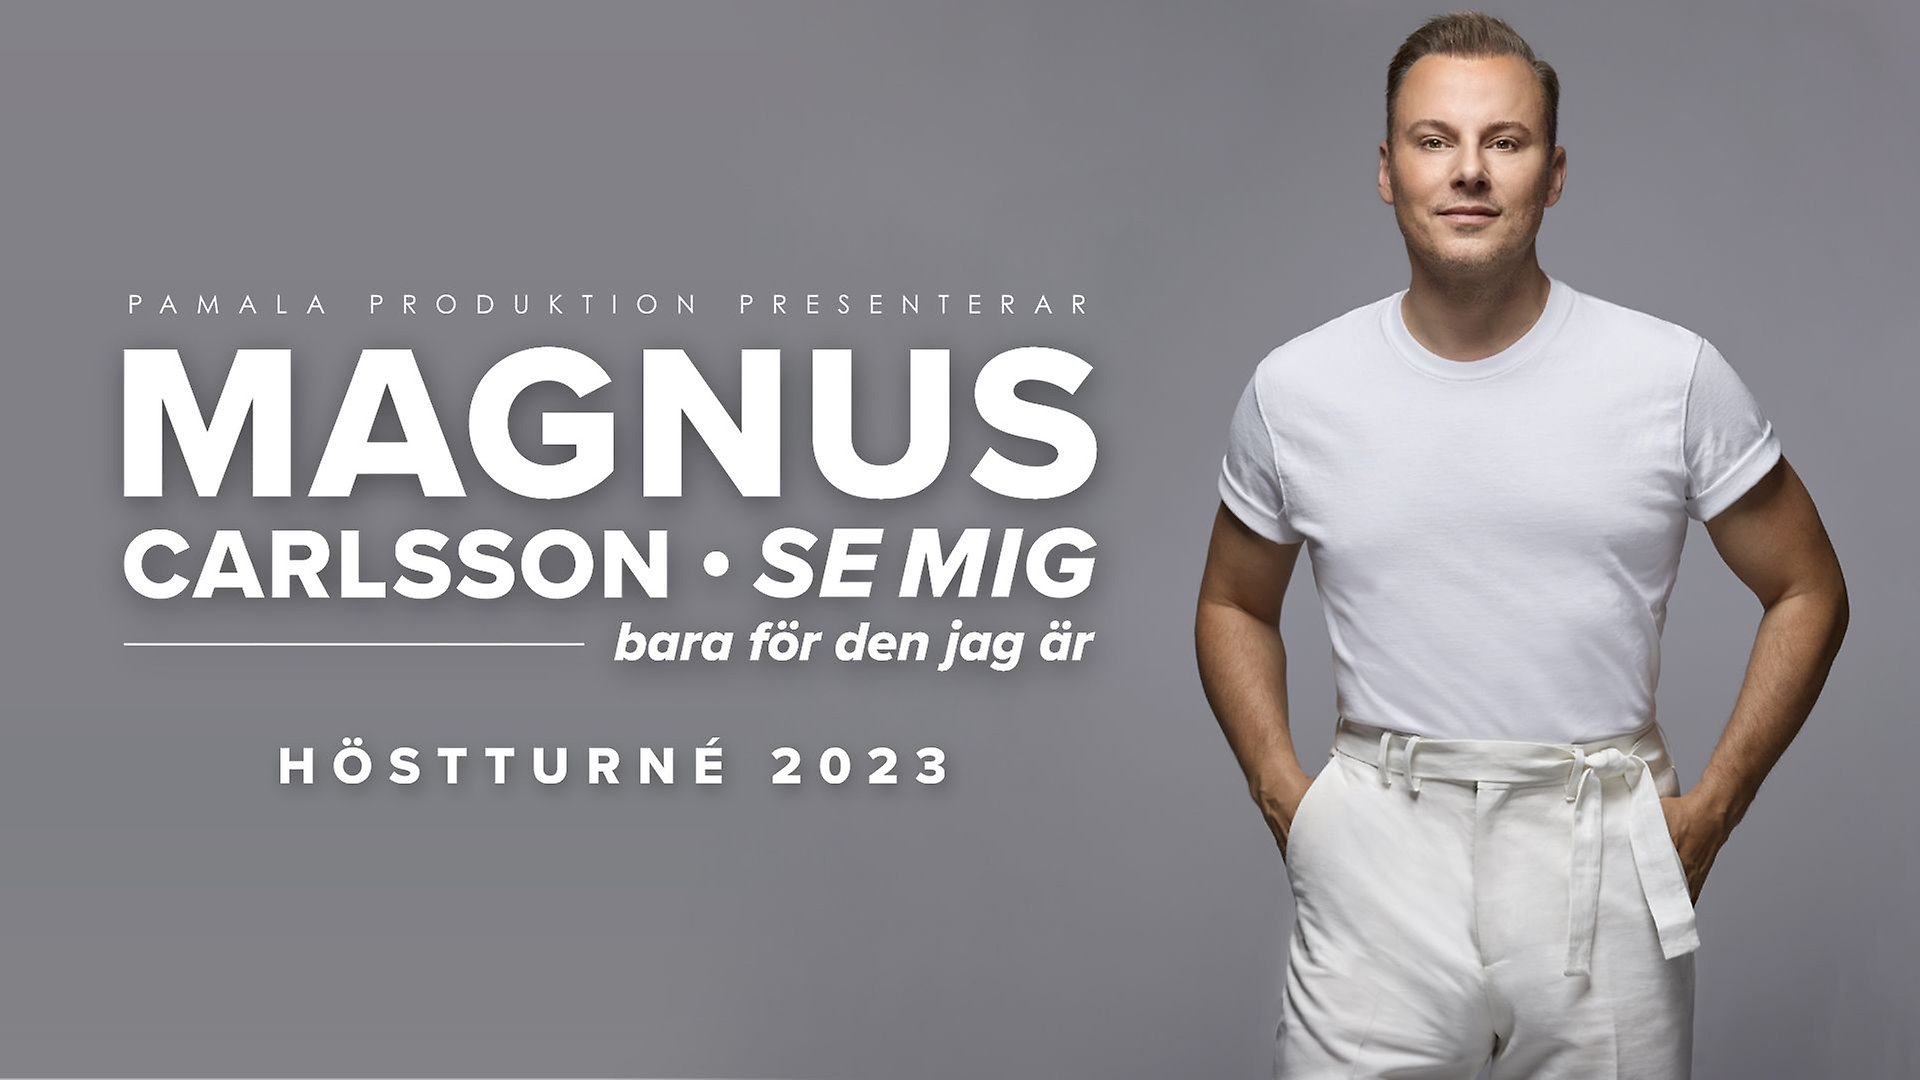 Magnus Carlsson i vita kläder framför en grå bakgrund.